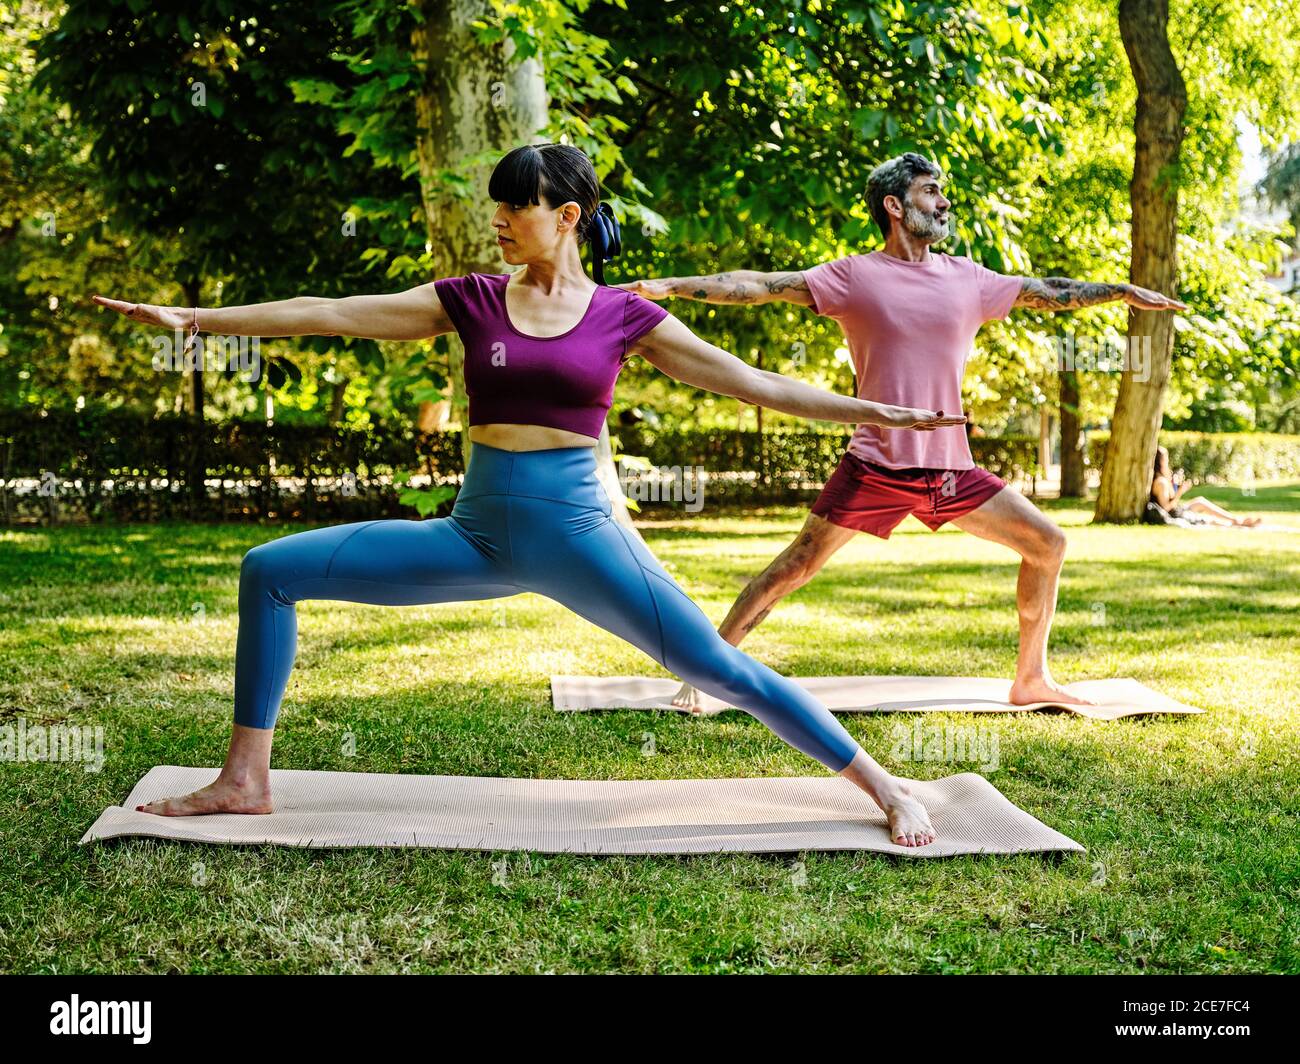 Ruhiges Paar auf Yogamatten, die Yoga in Virabhadrasana machen, während Barfuß im Park an sonnigen Tagen stehen und wegschauen Stockfoto